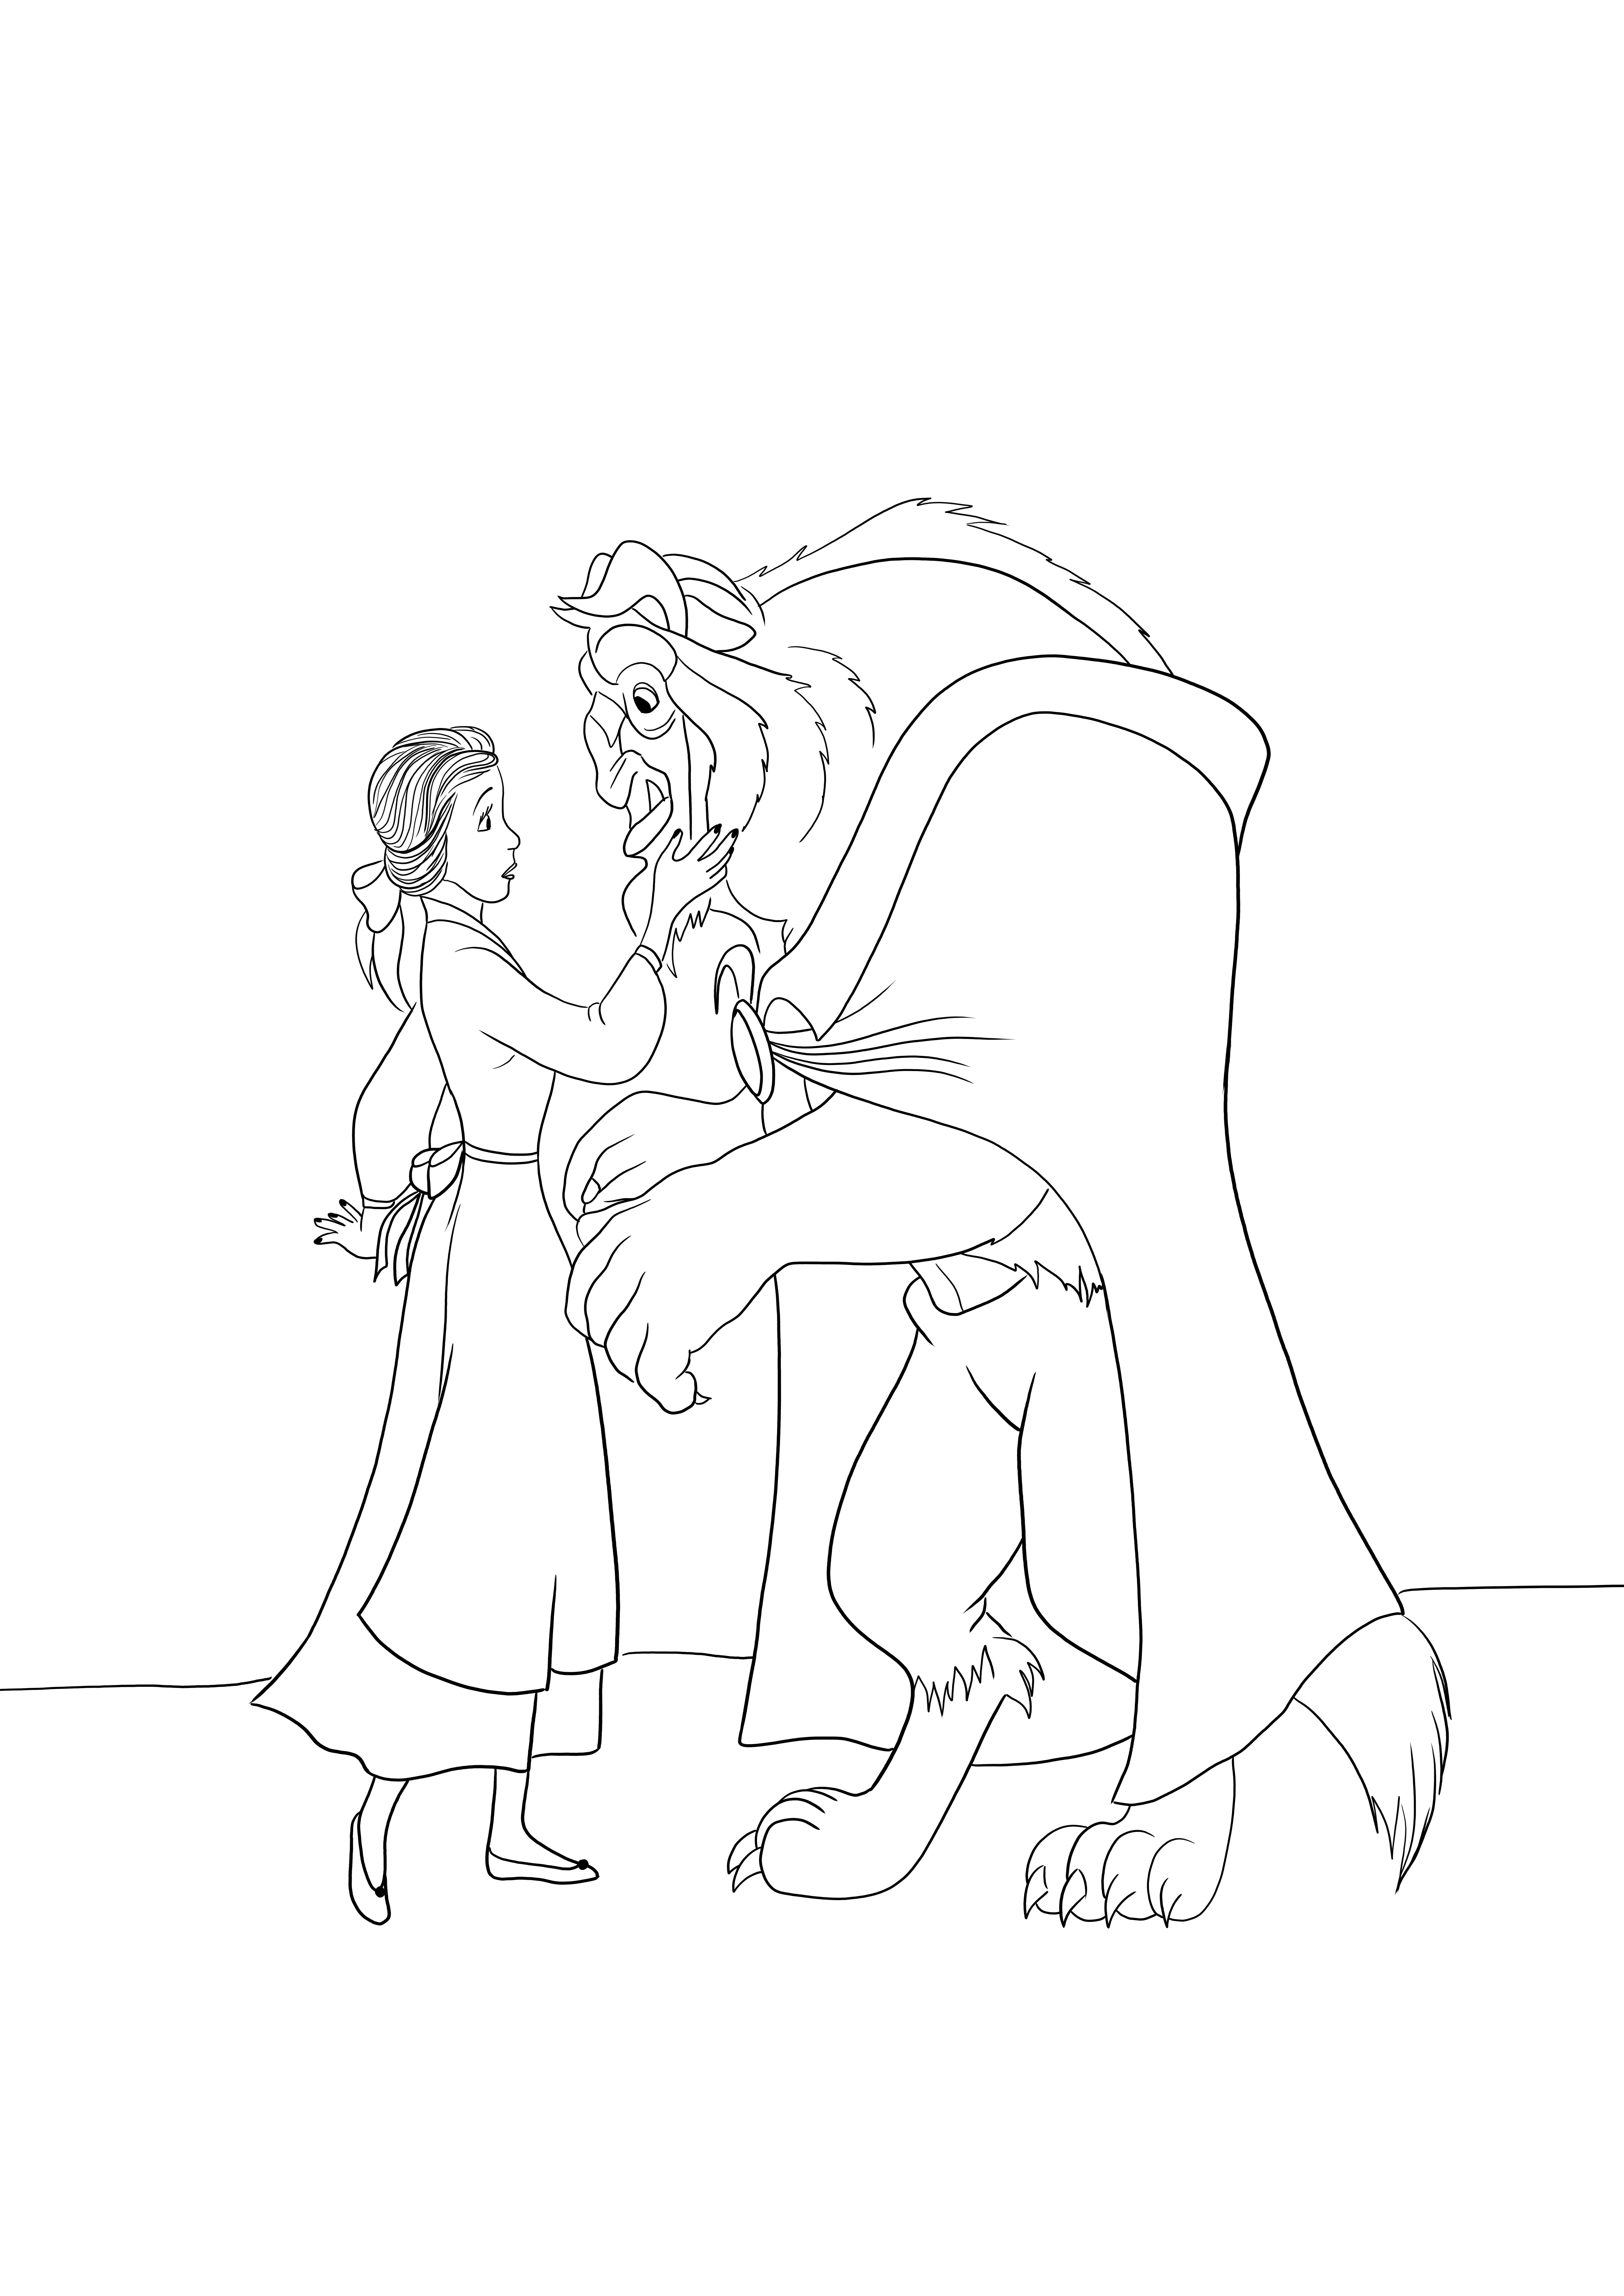 Disney Princesse Belle et la Bête image à colorier à télécharger gratuitement